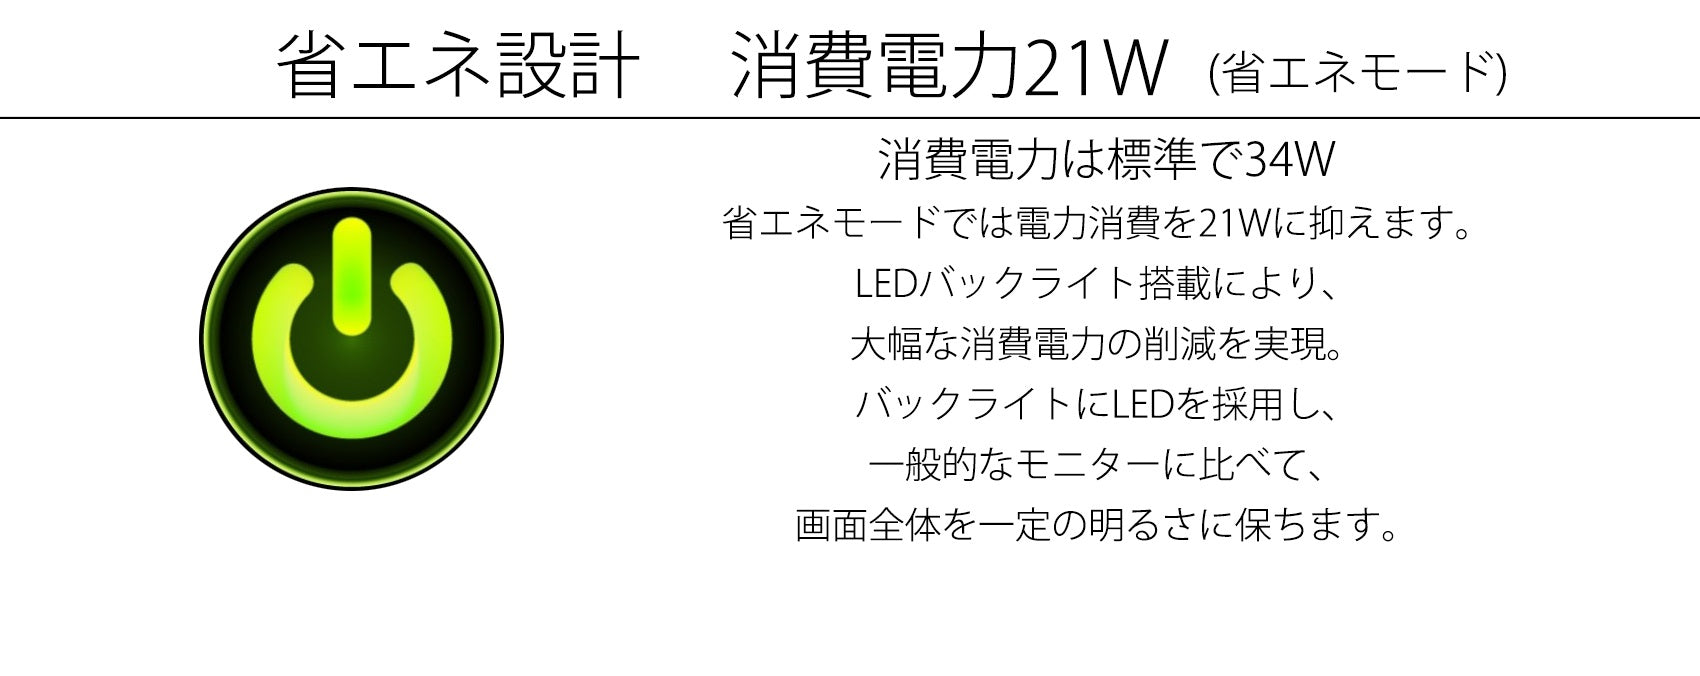 JN-T27WQHD-C65W